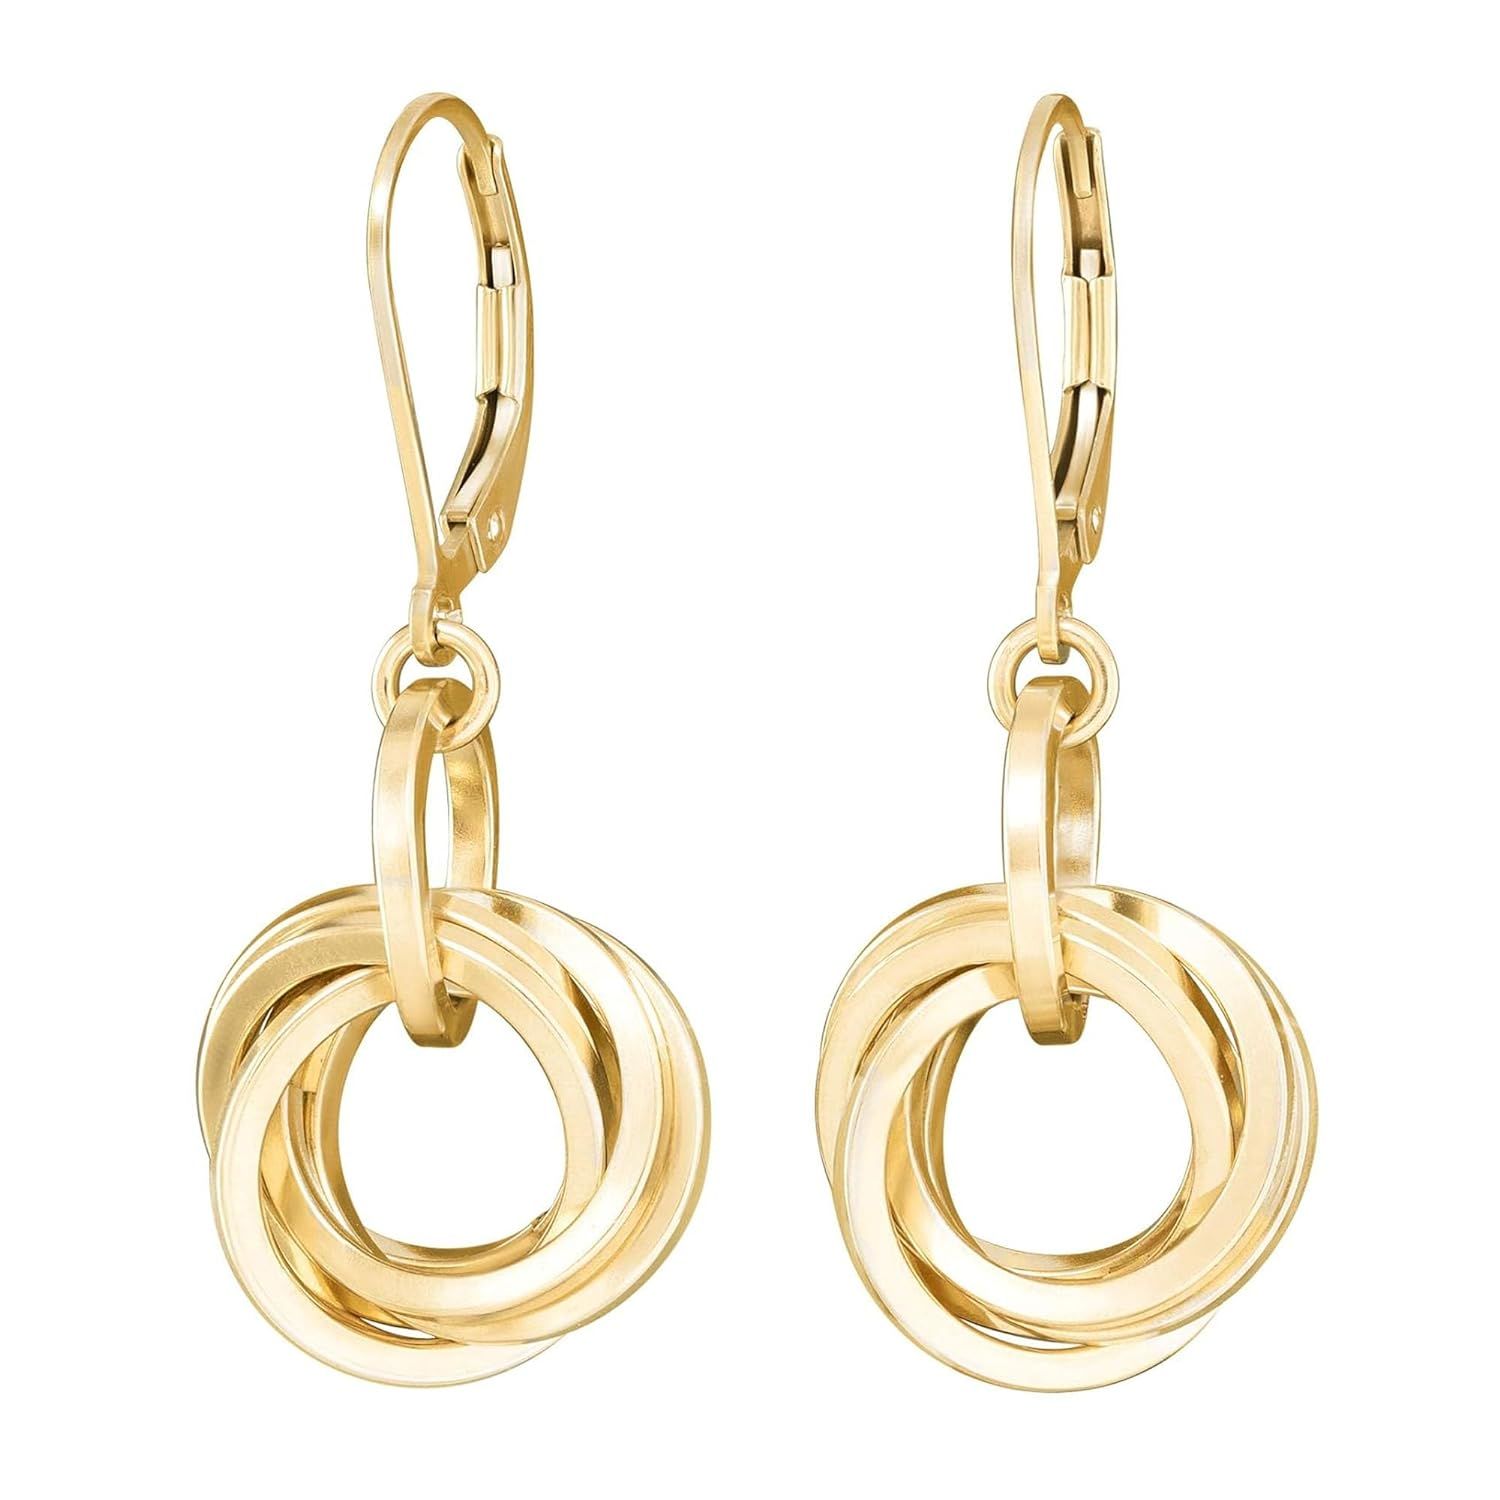 Dressy Love Knot Gold Dangle Earrings For Women – Leverback 14K Gold Filled Dangling Earrings ... | Amazon (US)